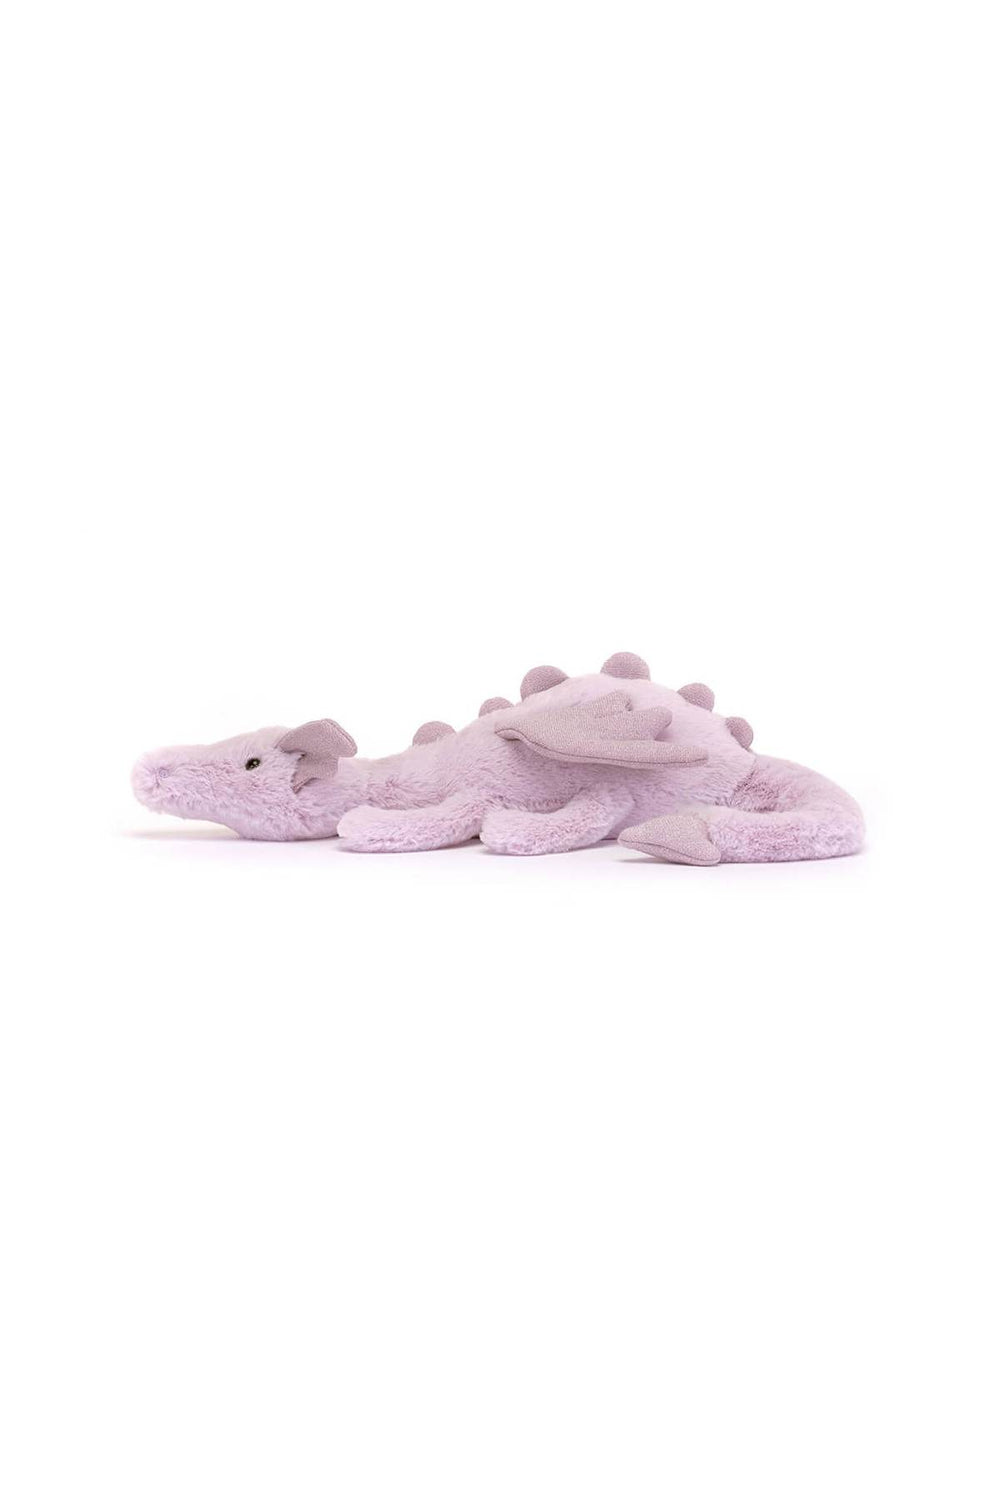 plush lavender dragon toy-1